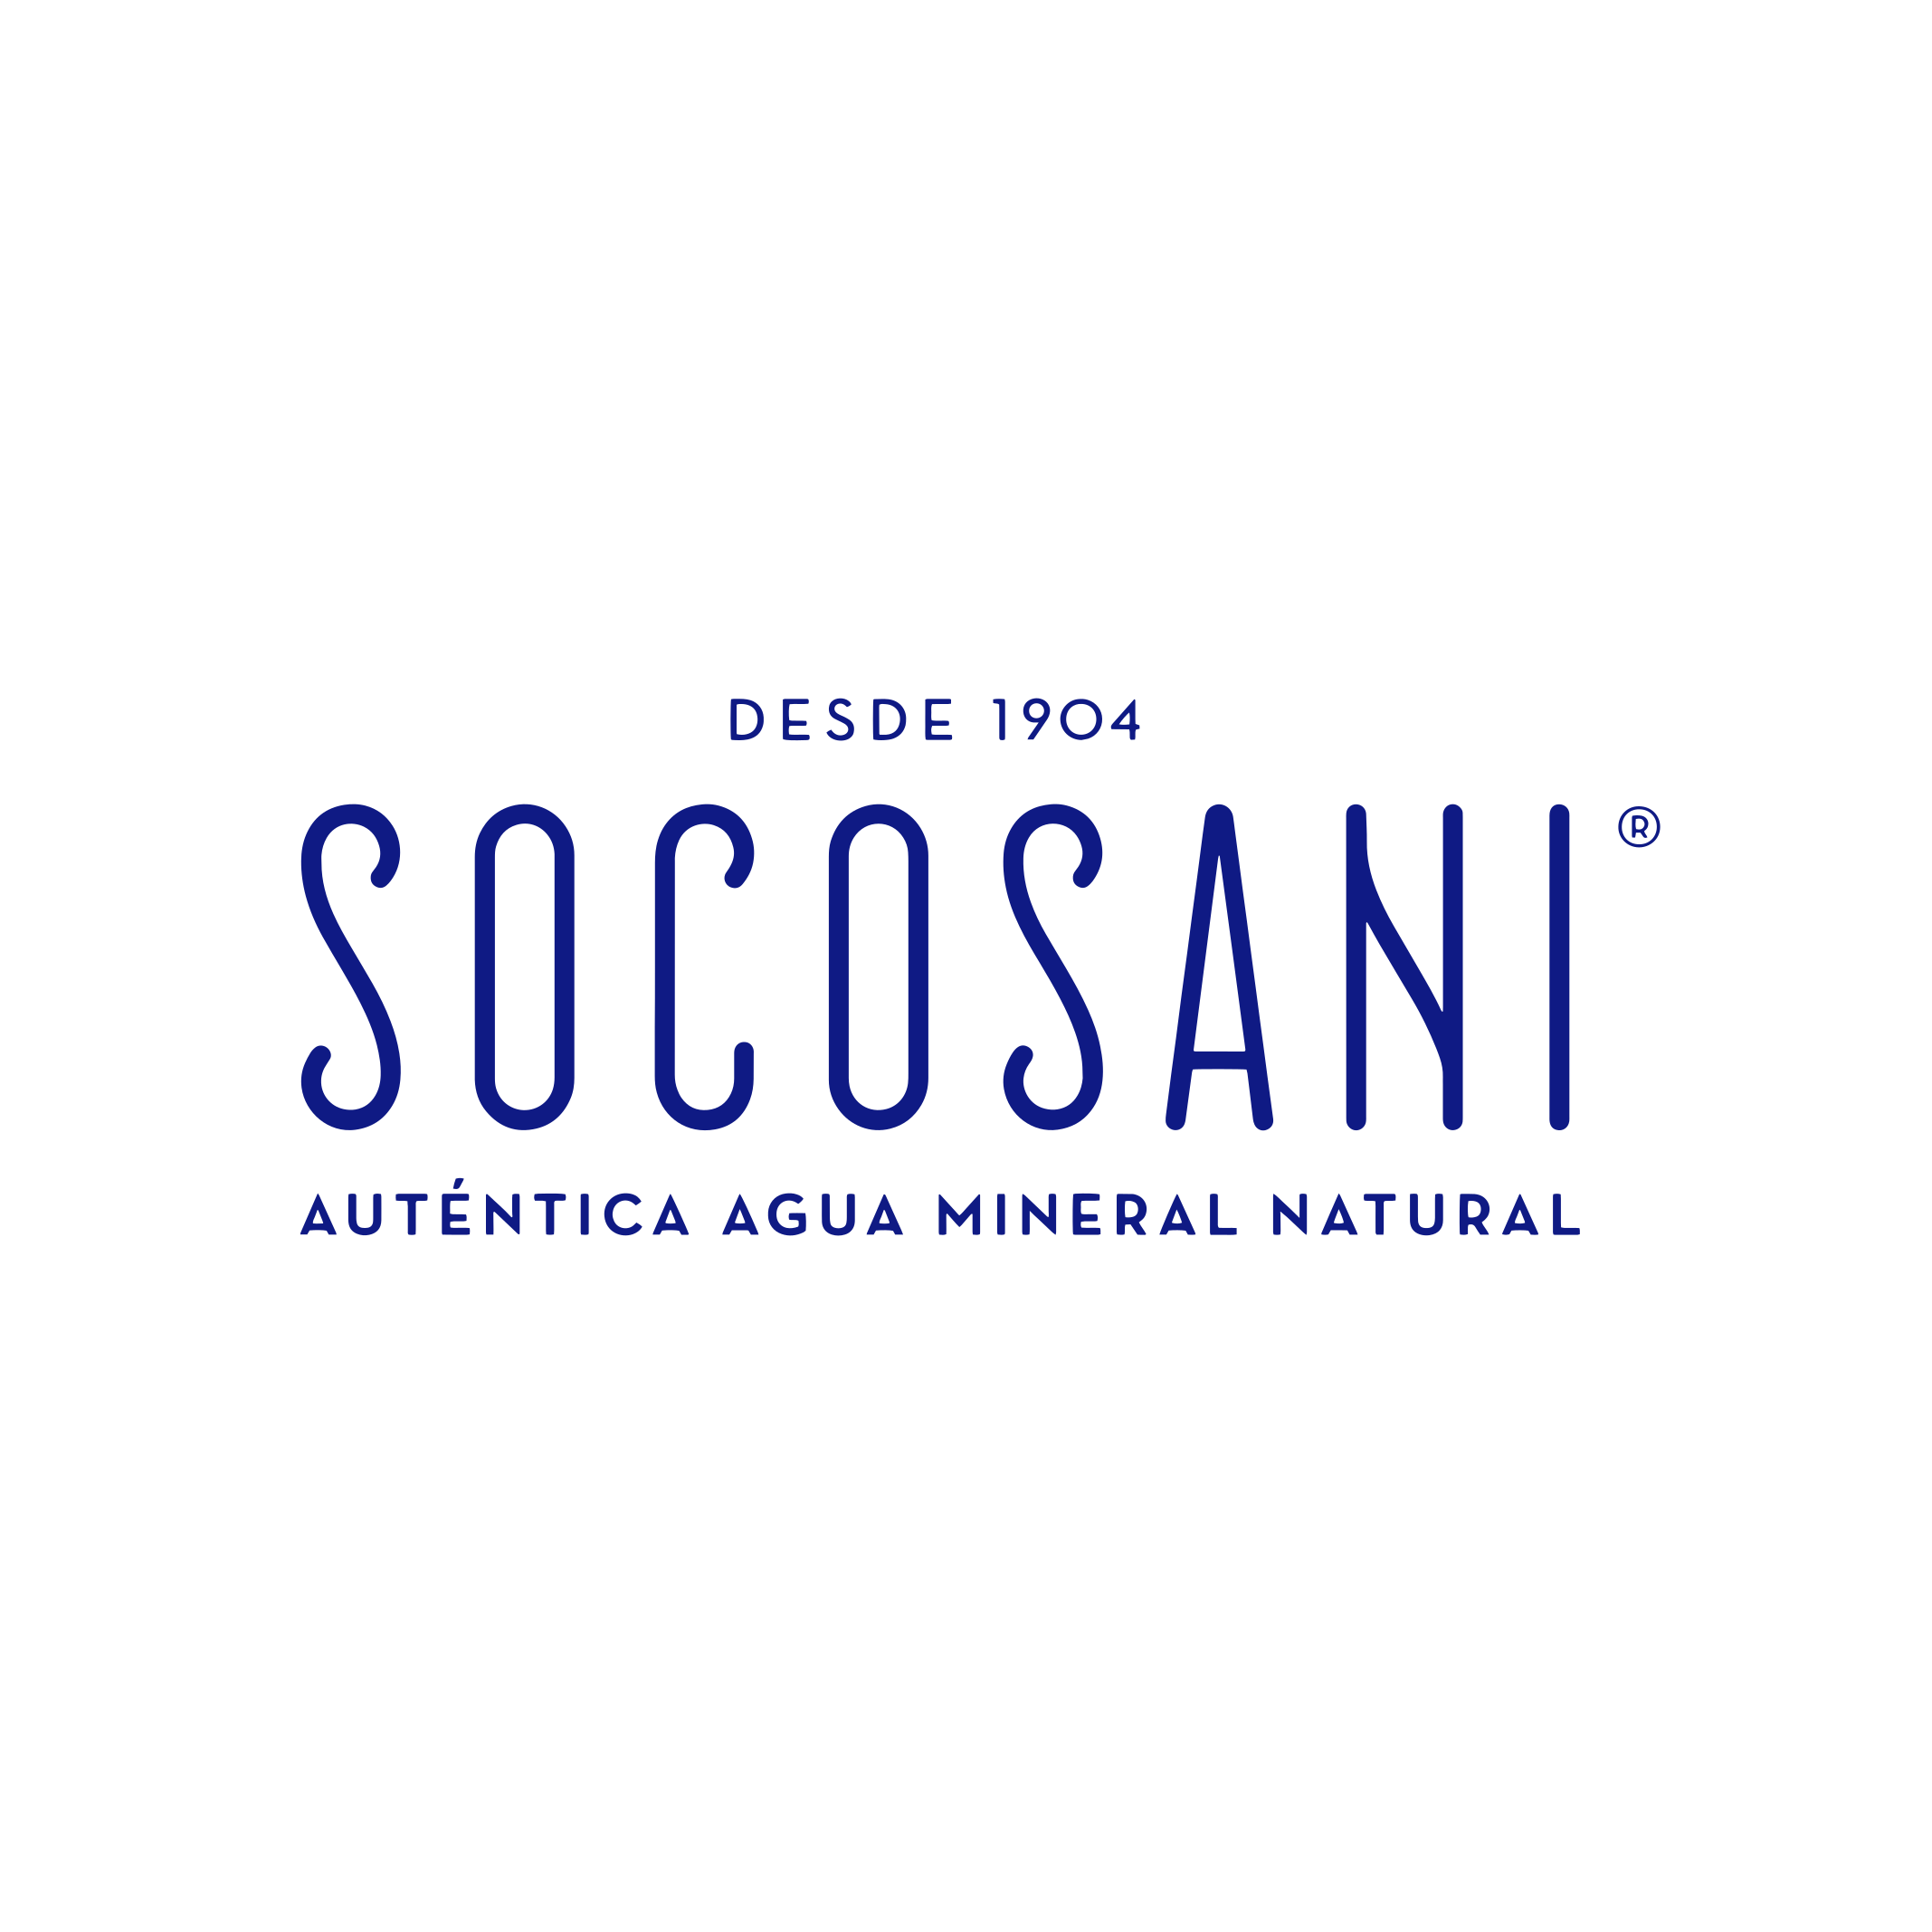 (c) Socosani.com